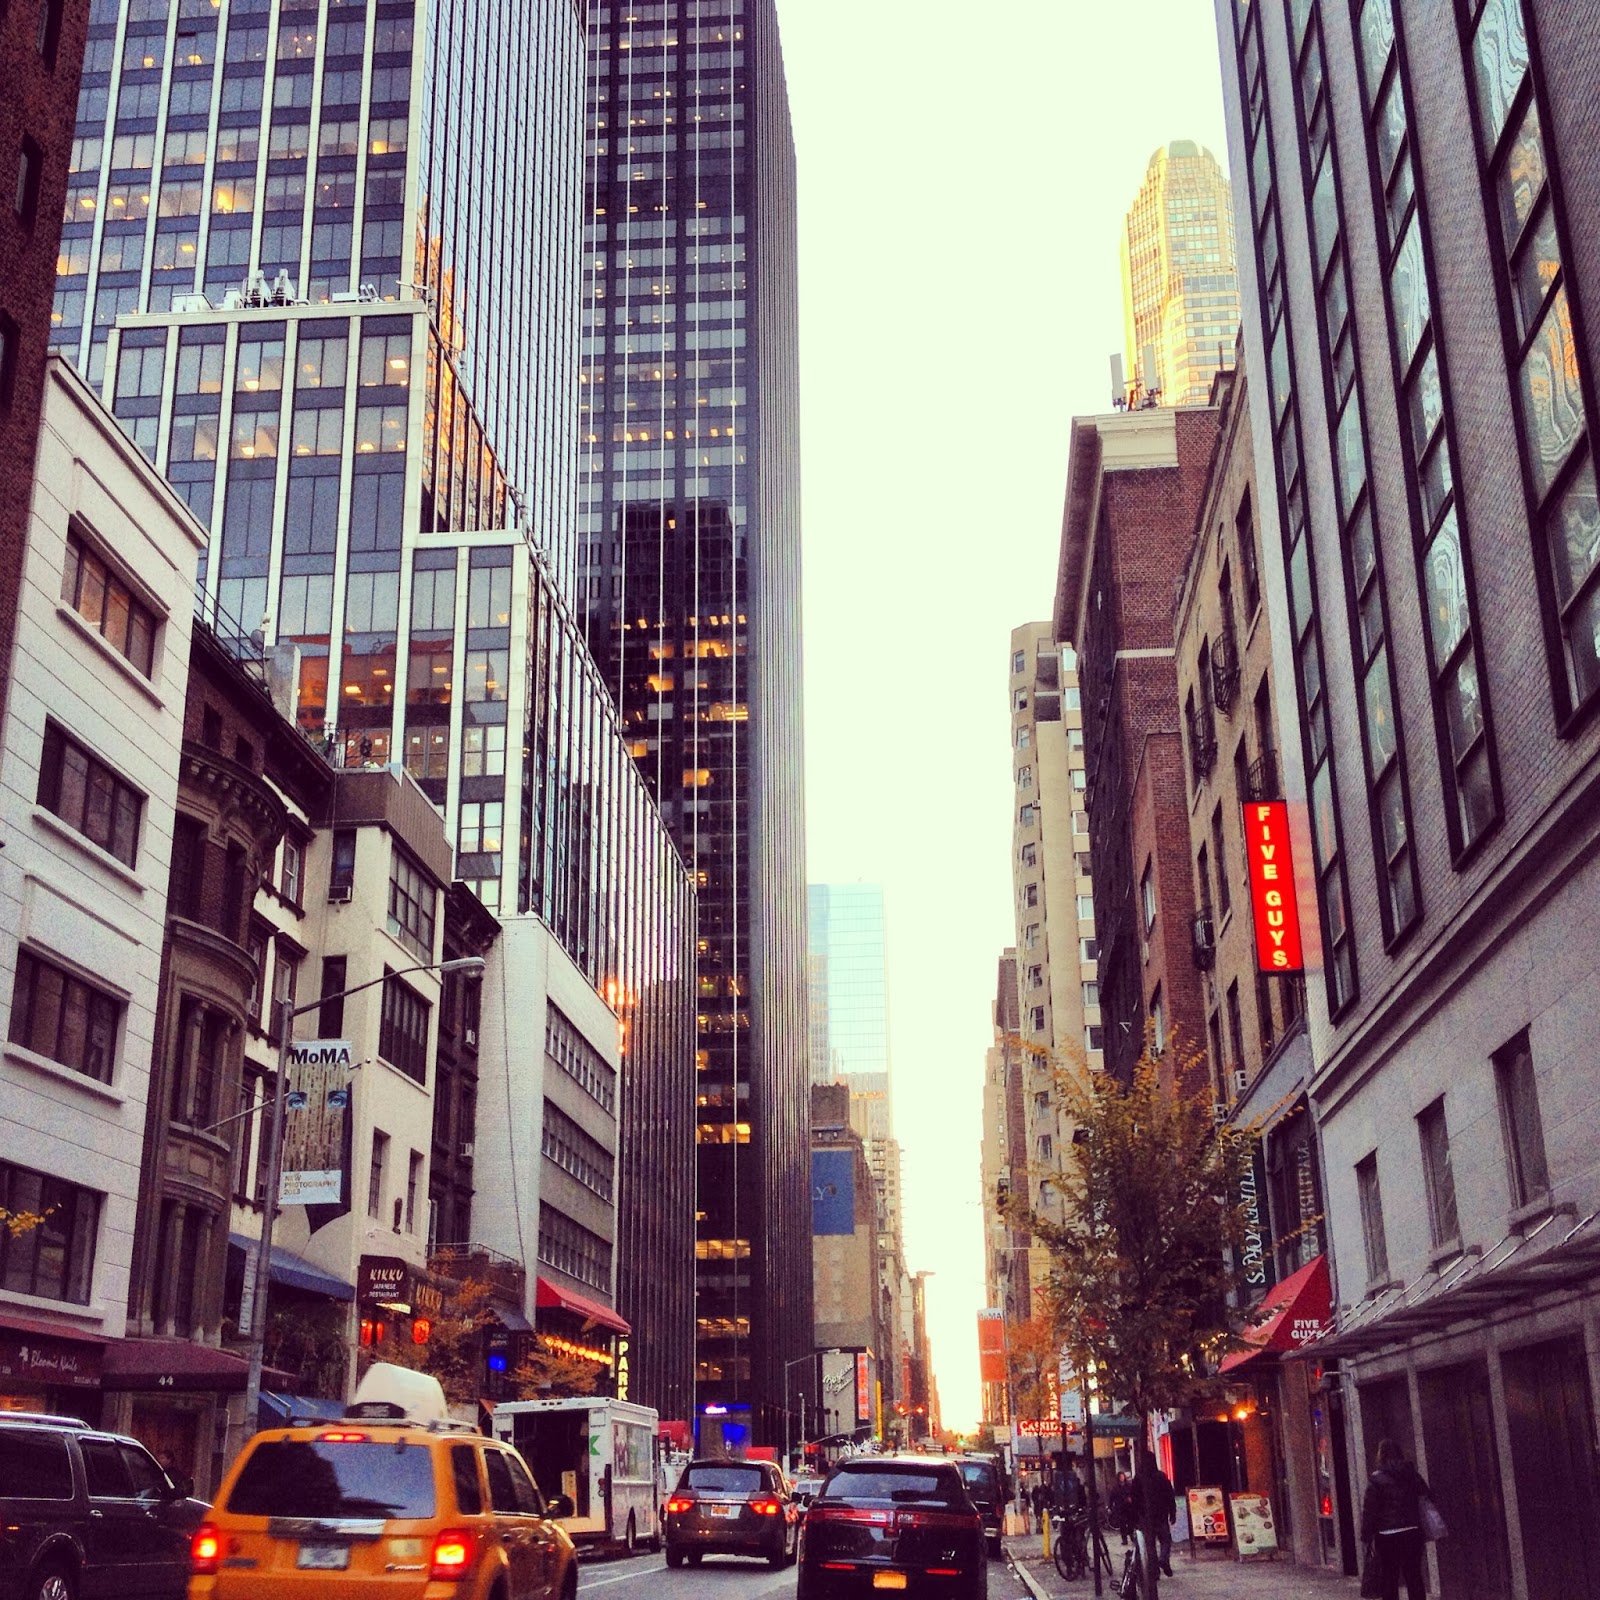 Αποτέλεσμα εικόνας για new york via insta photos